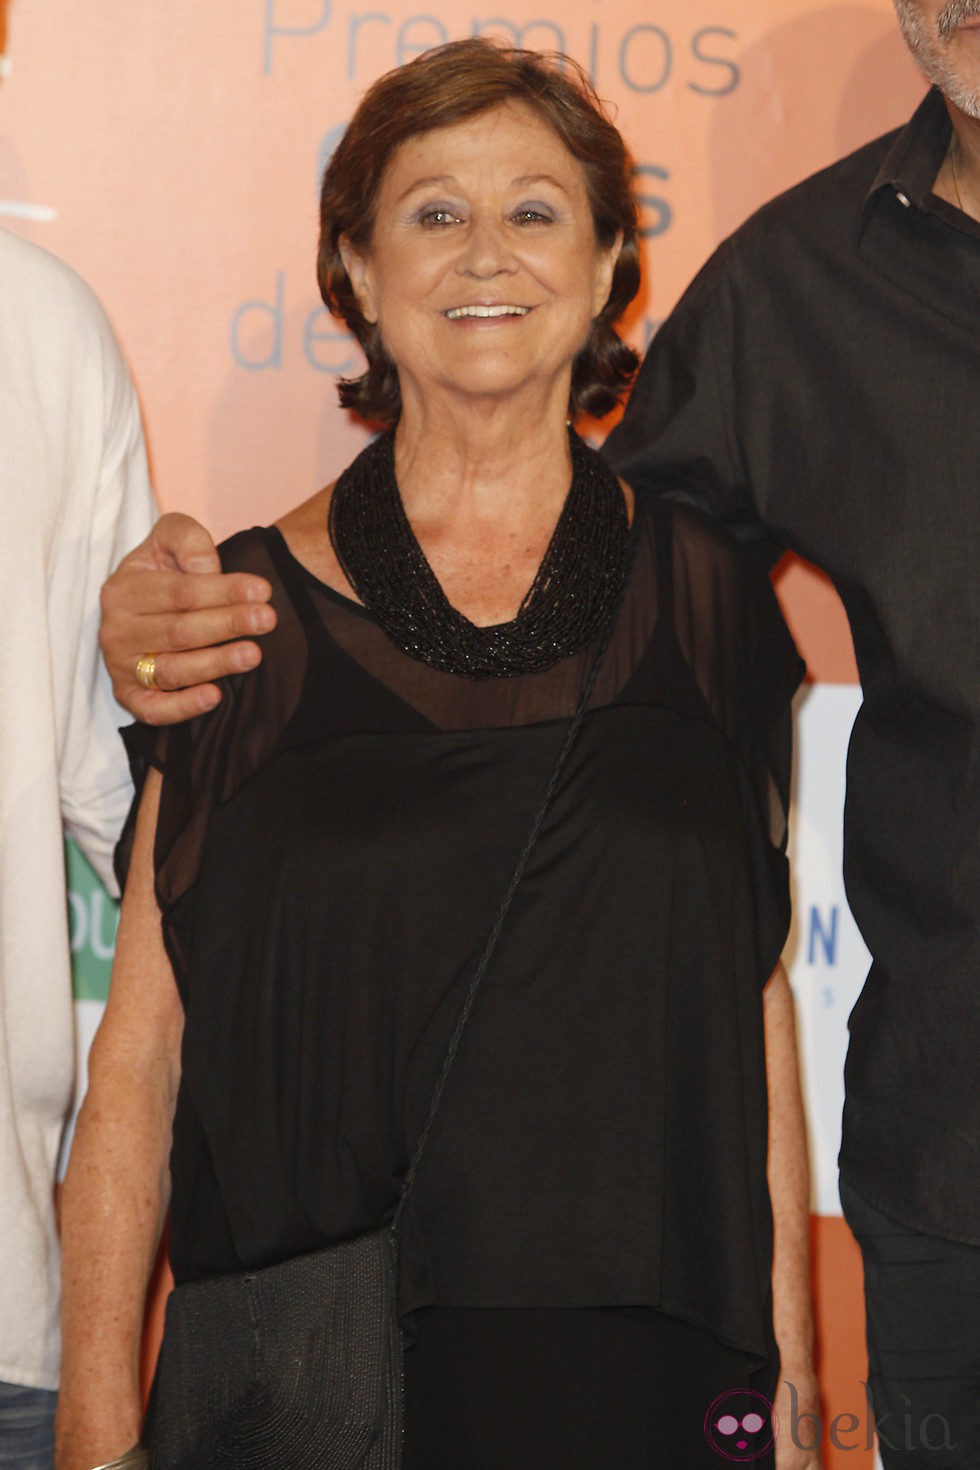 Julieta Serrano en los Premios Ceres 2012